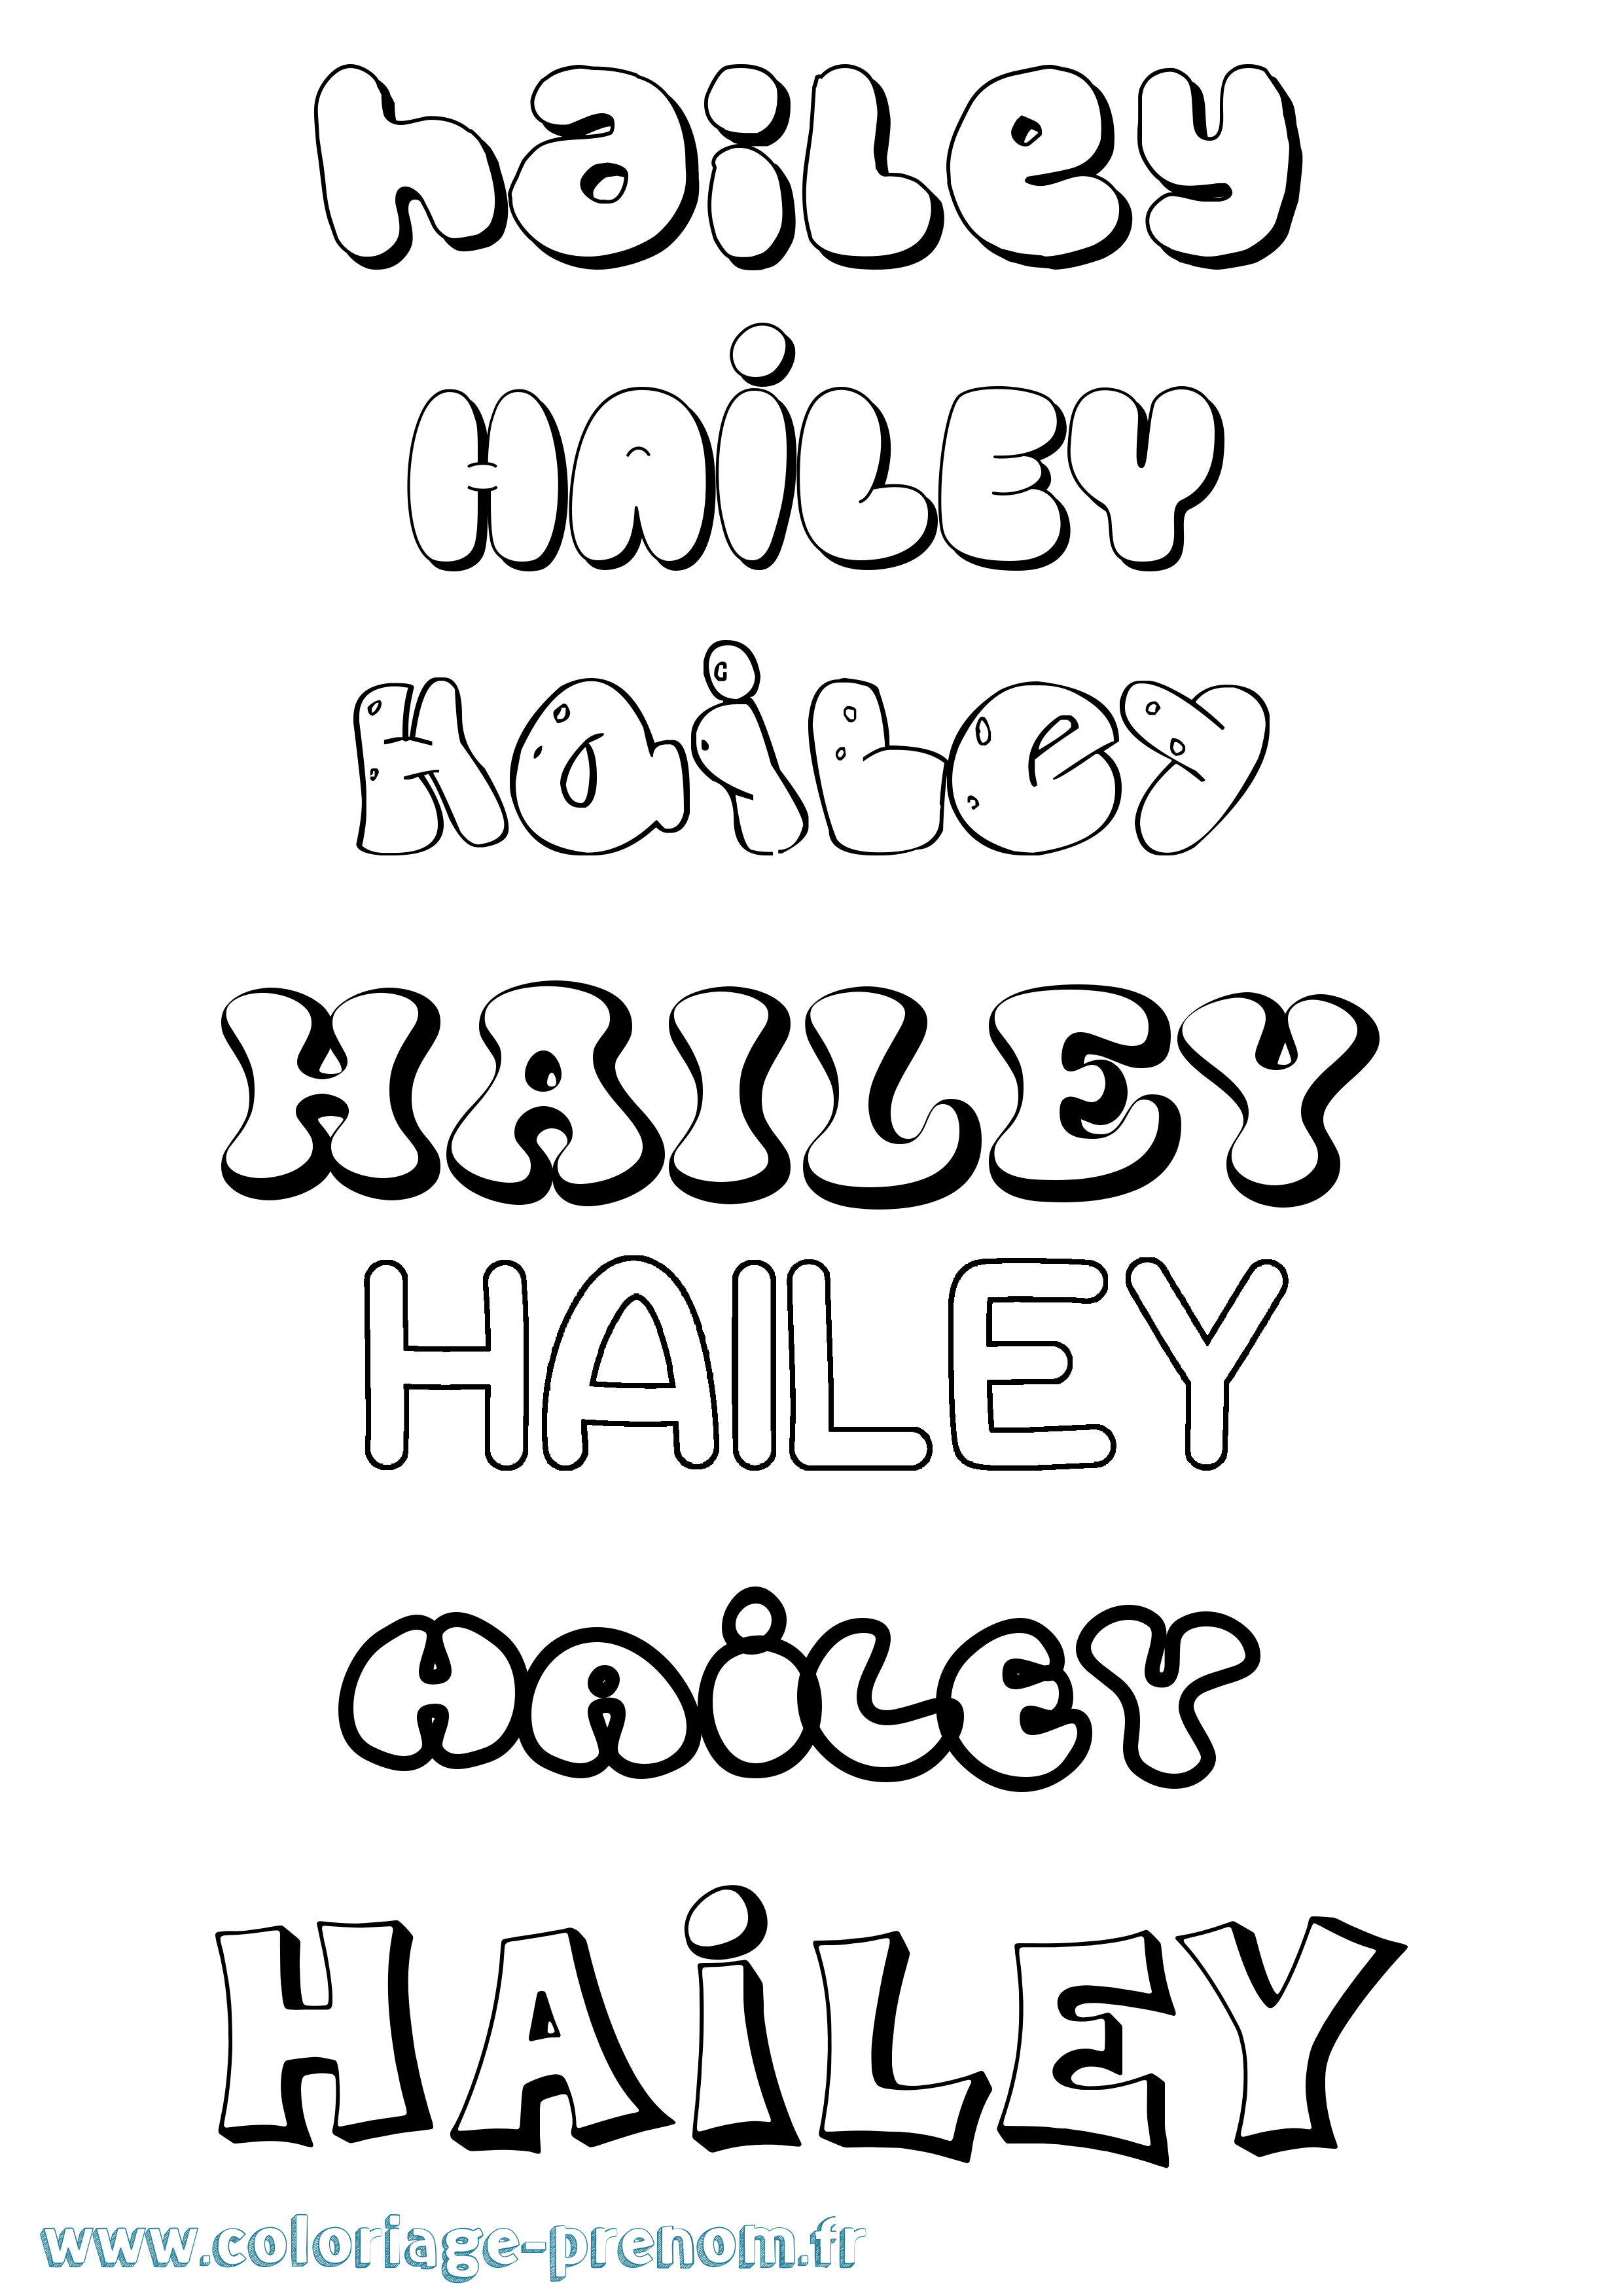 Coloriage prénom Hailey Bubble